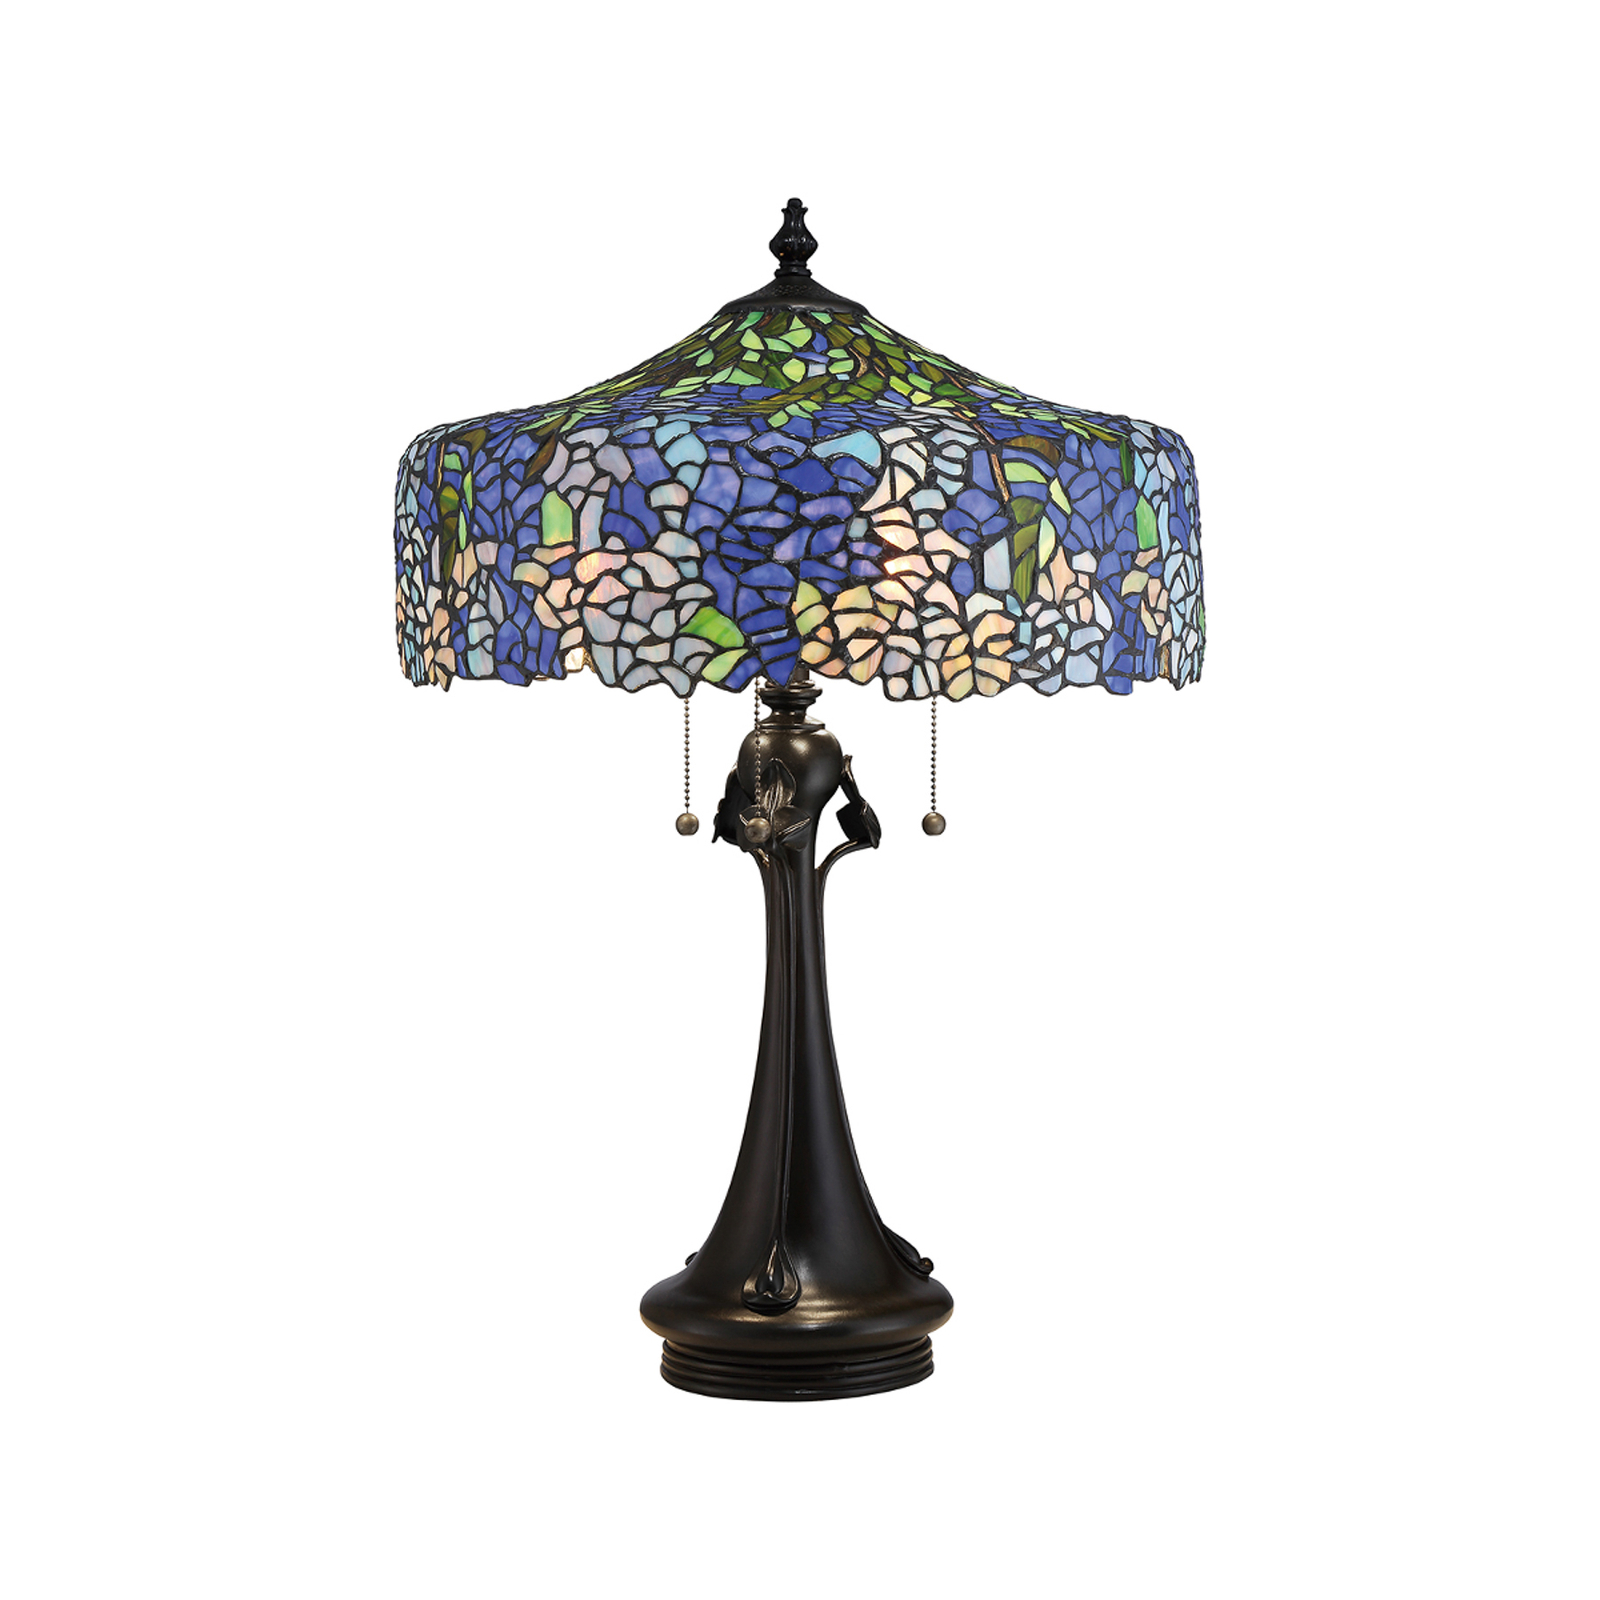 Stolní lampa Cobalt v designu Tiffany